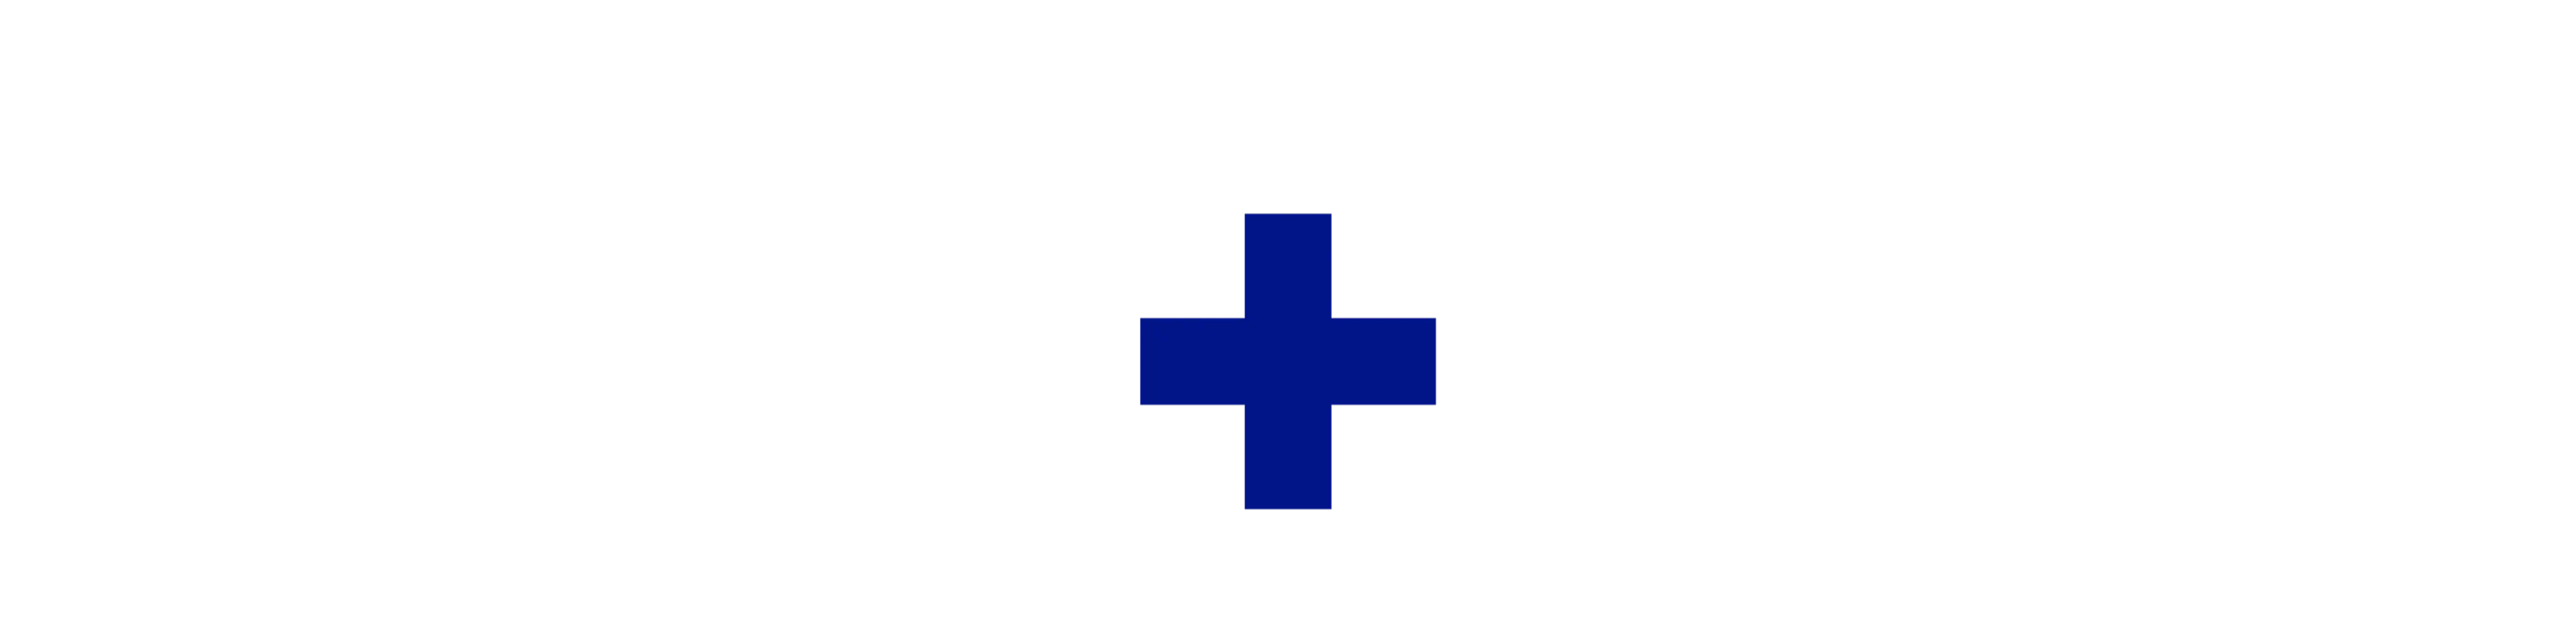 emuaid logo della croce